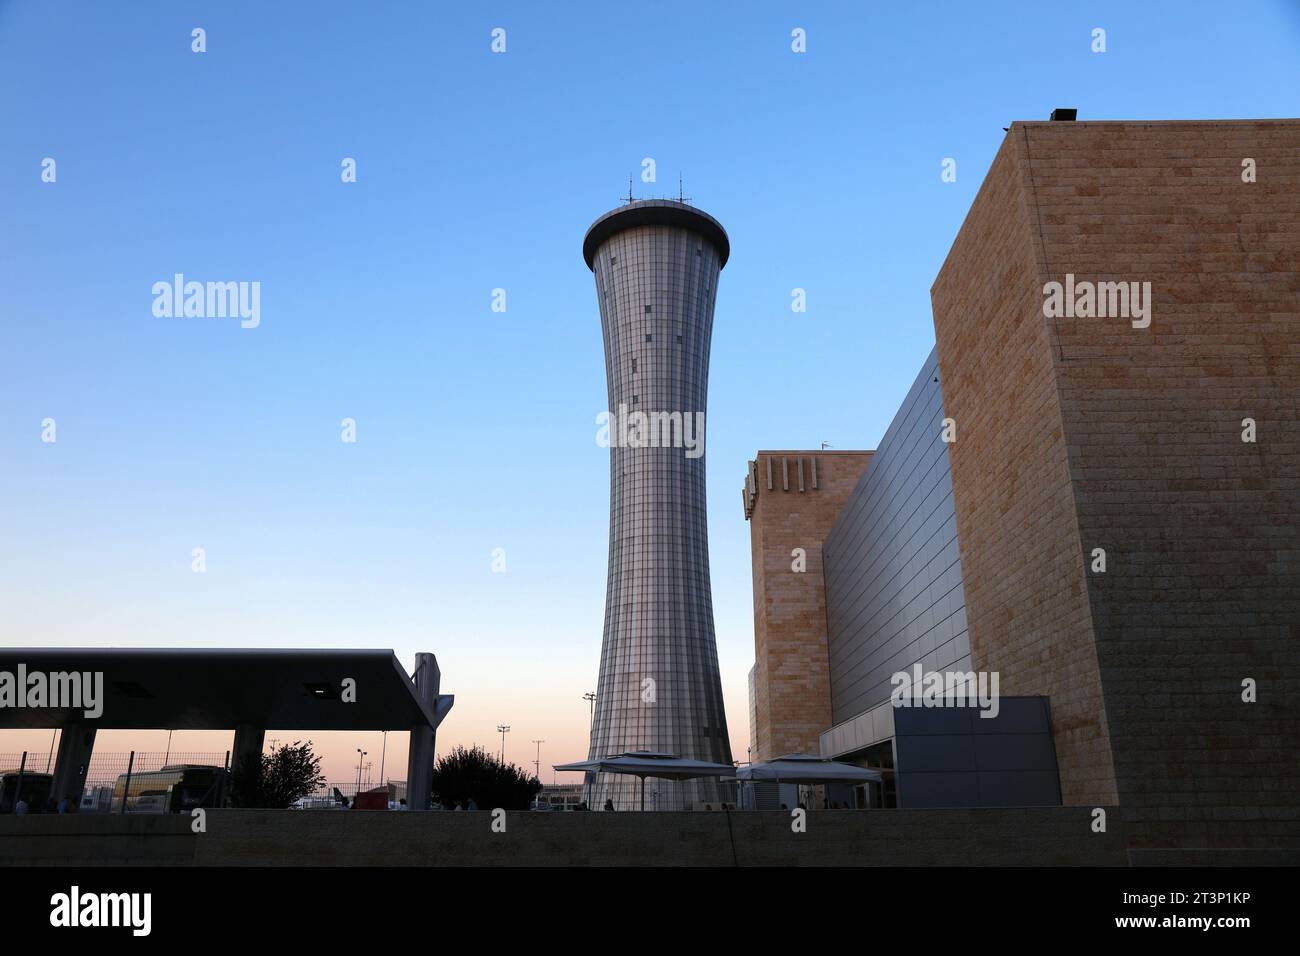 TEL AVIV, ISRAELE - 4 NOVEMBRE 2022: Torre di controllo ATC presso l'aeroporto Ben Gurion di Tel Aviv, Israele. È il più grande e importante aeroporto di Isra Foto Stock